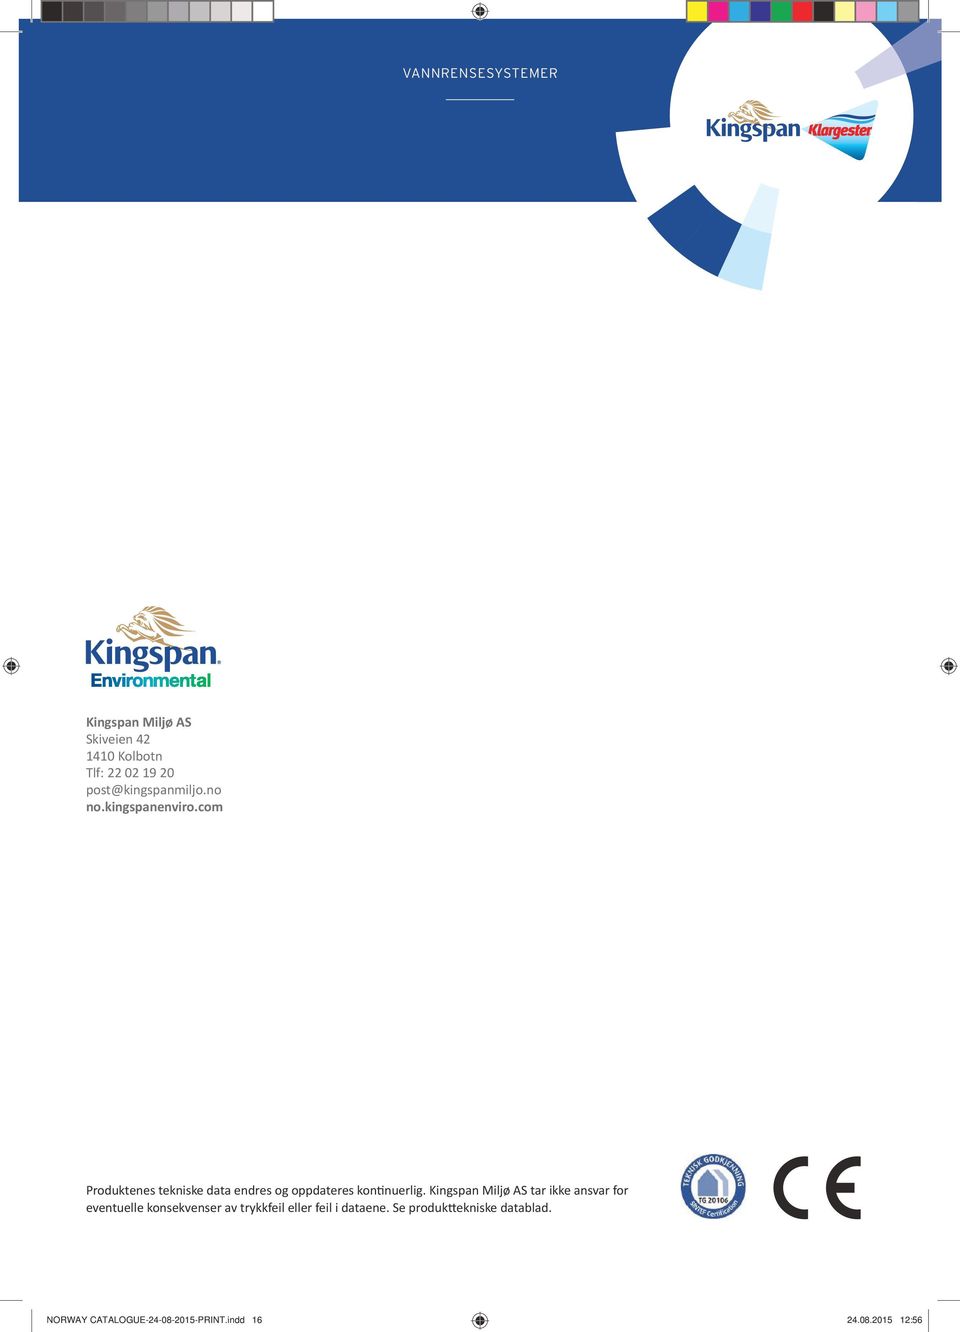 Kingspan Miljø AS tar ikke ansvar for eventuelle konsekvenser av trykkfeil eller feil i